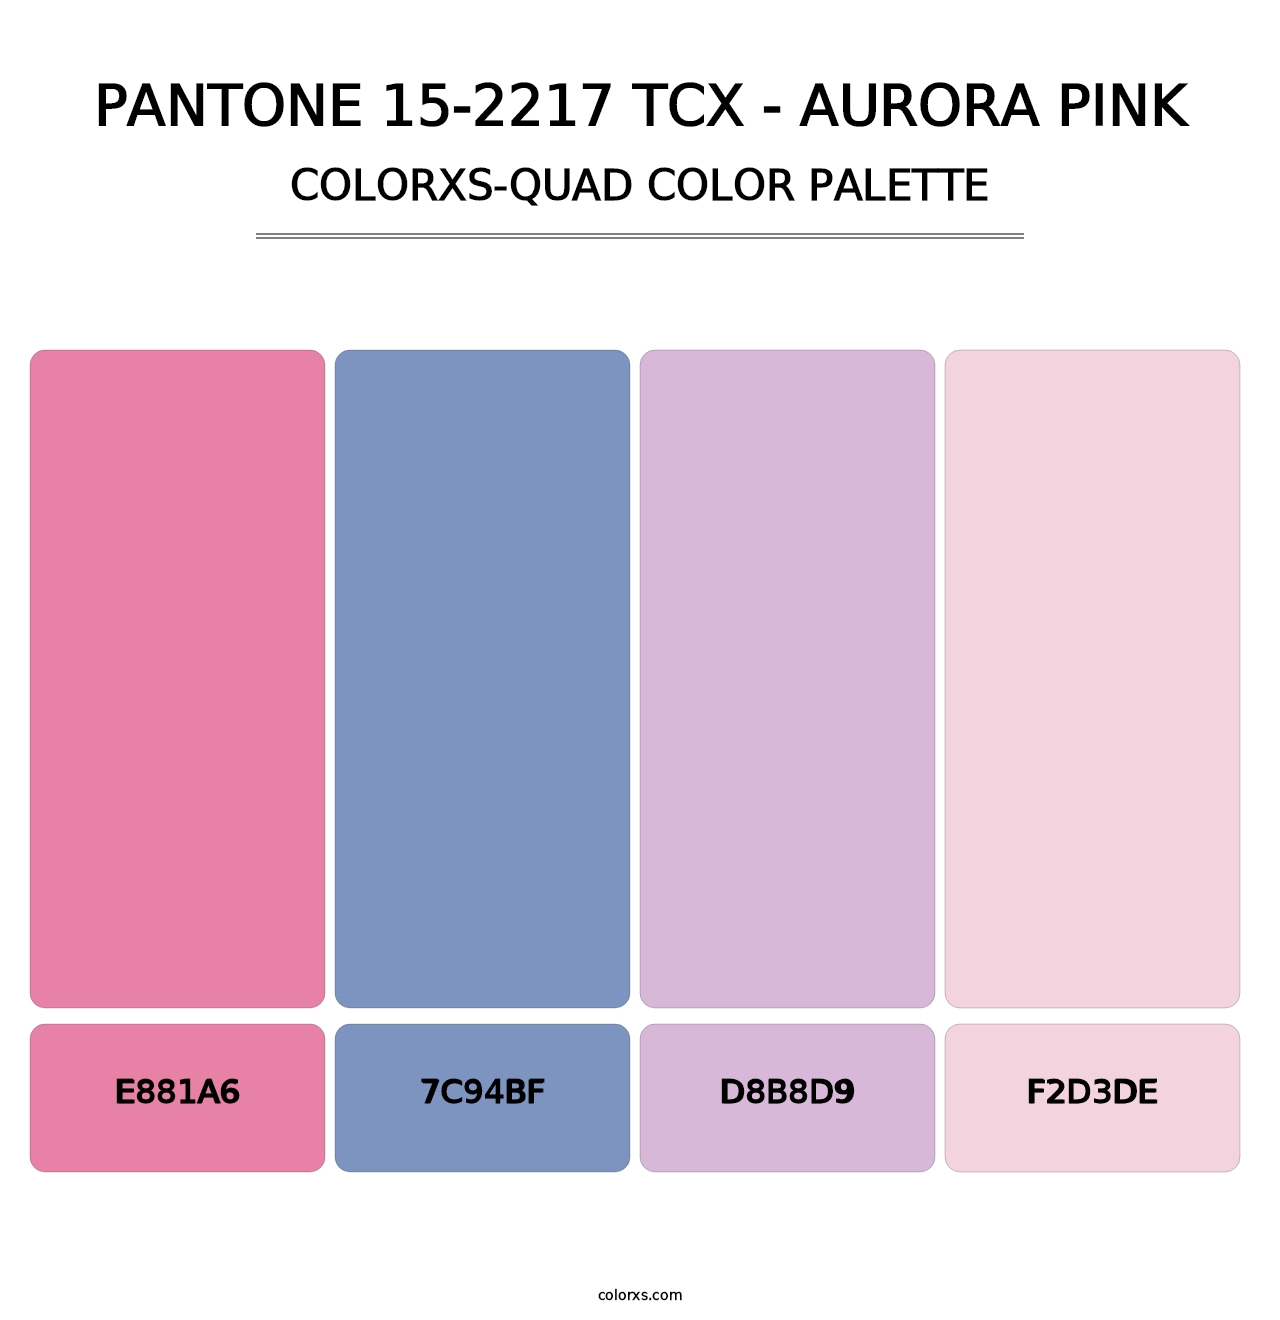 PANTONE 15-2217 TCX - Aurora Pink - Colorxs Quad Palette